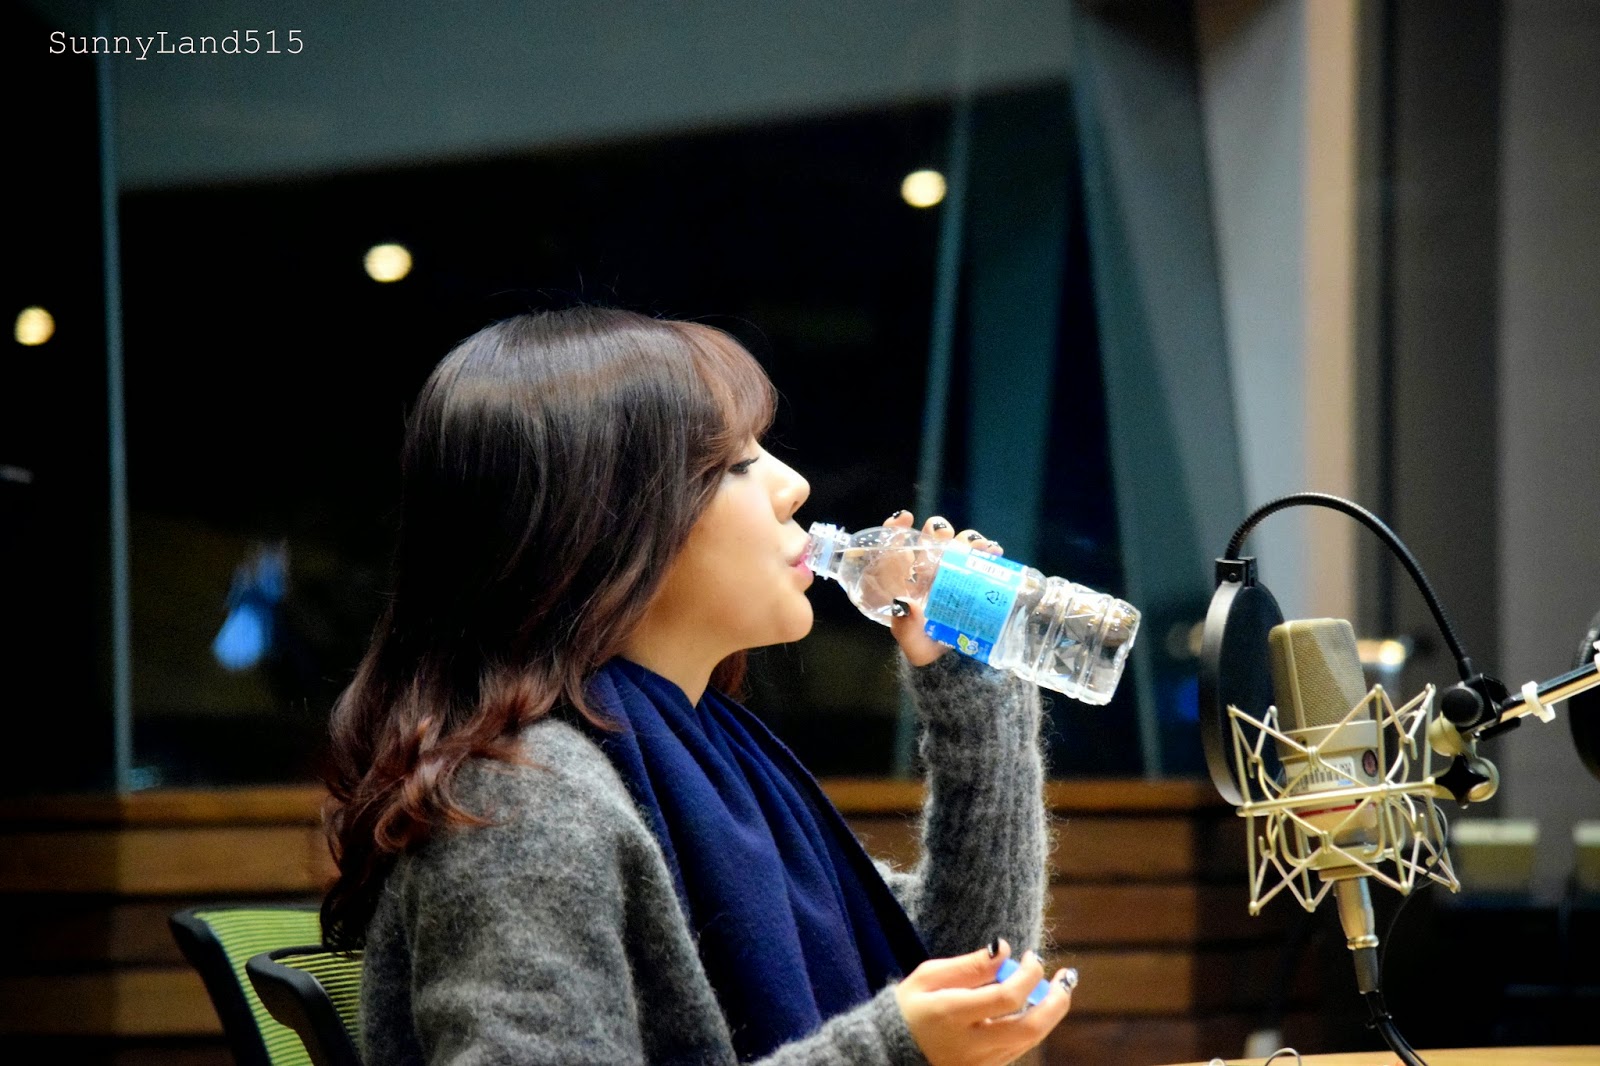 [OTHER][06-02-2015]Hình ảnh mới nhất từ DJ Sunny tại Radio MBC FM4U - "FM Date" - Page 10 DSC_0028_Fotor